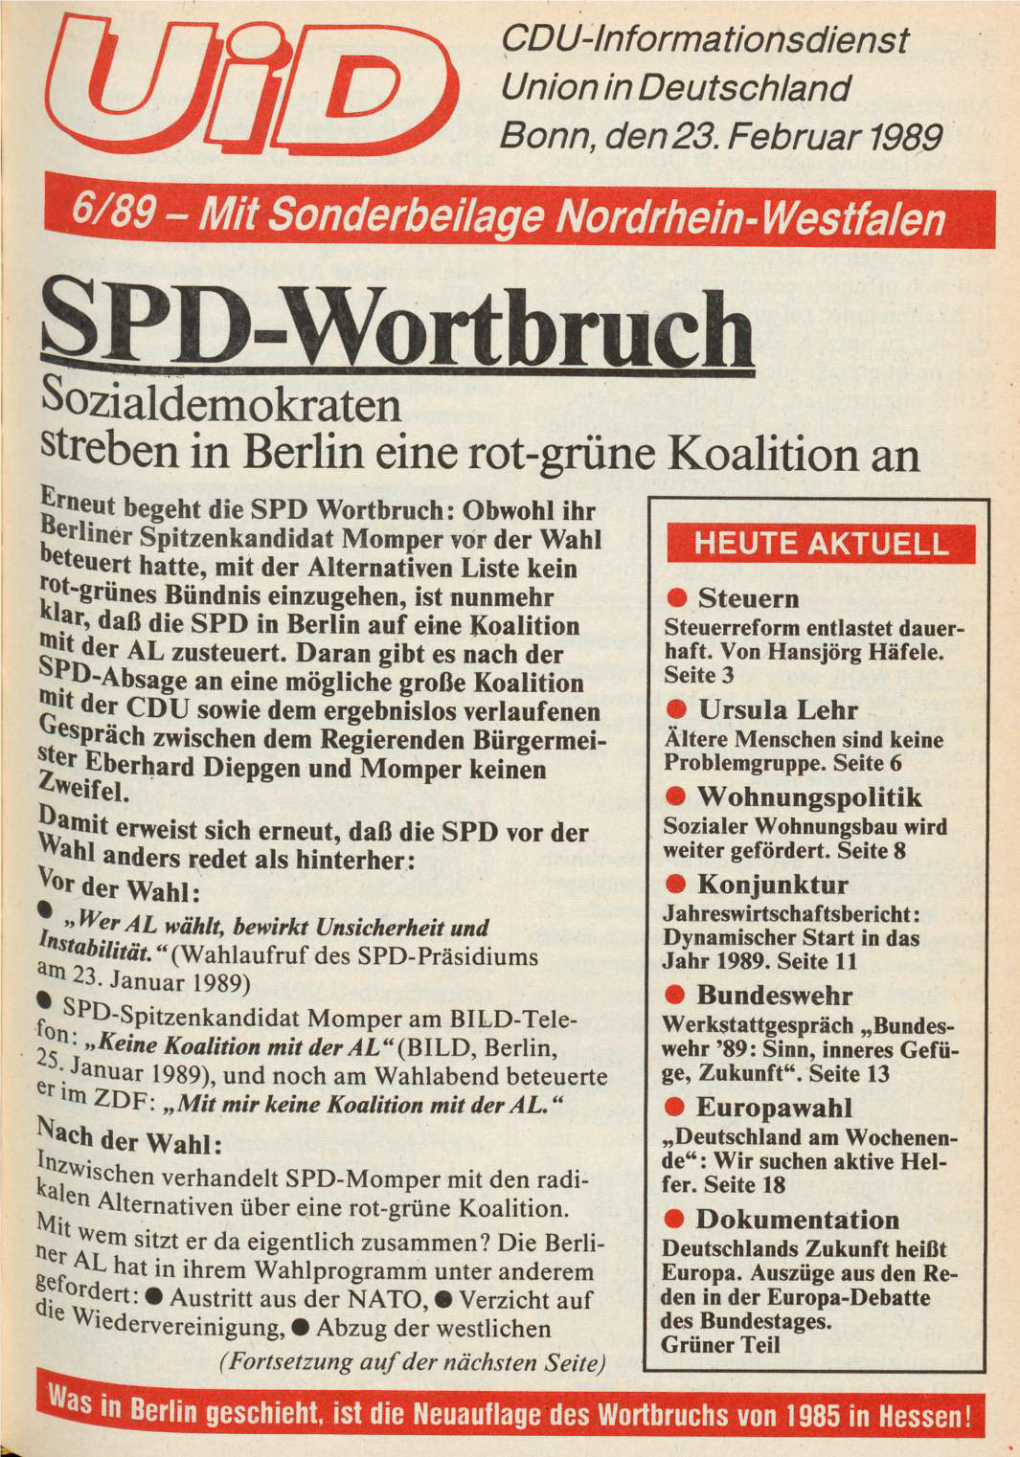 UID 1989 Nr. 6, Union in Deutschland